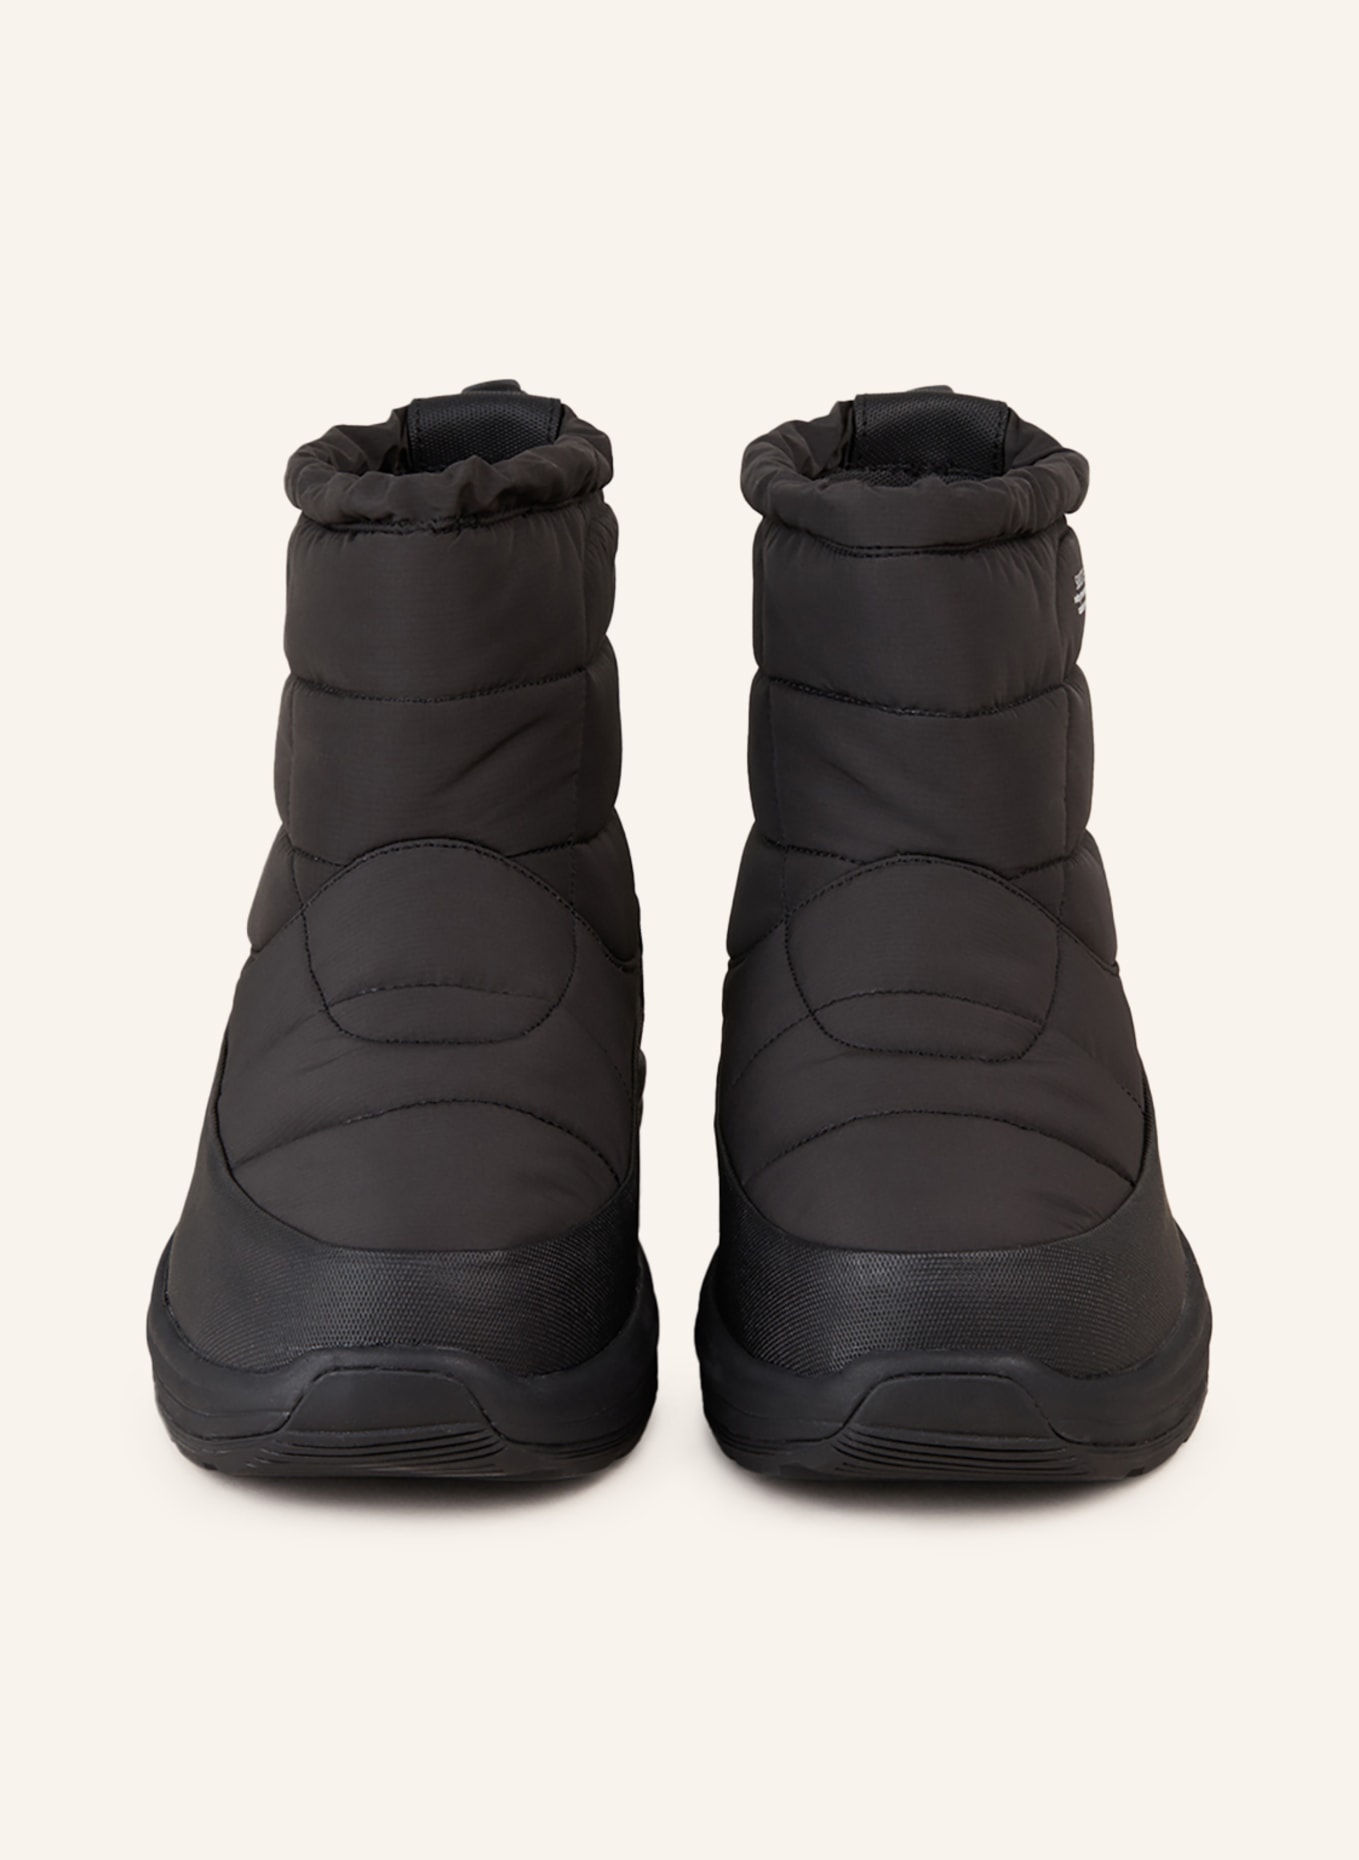 SUICOKE Boots BOWER MODEV, Color: BLACK (Image 3)